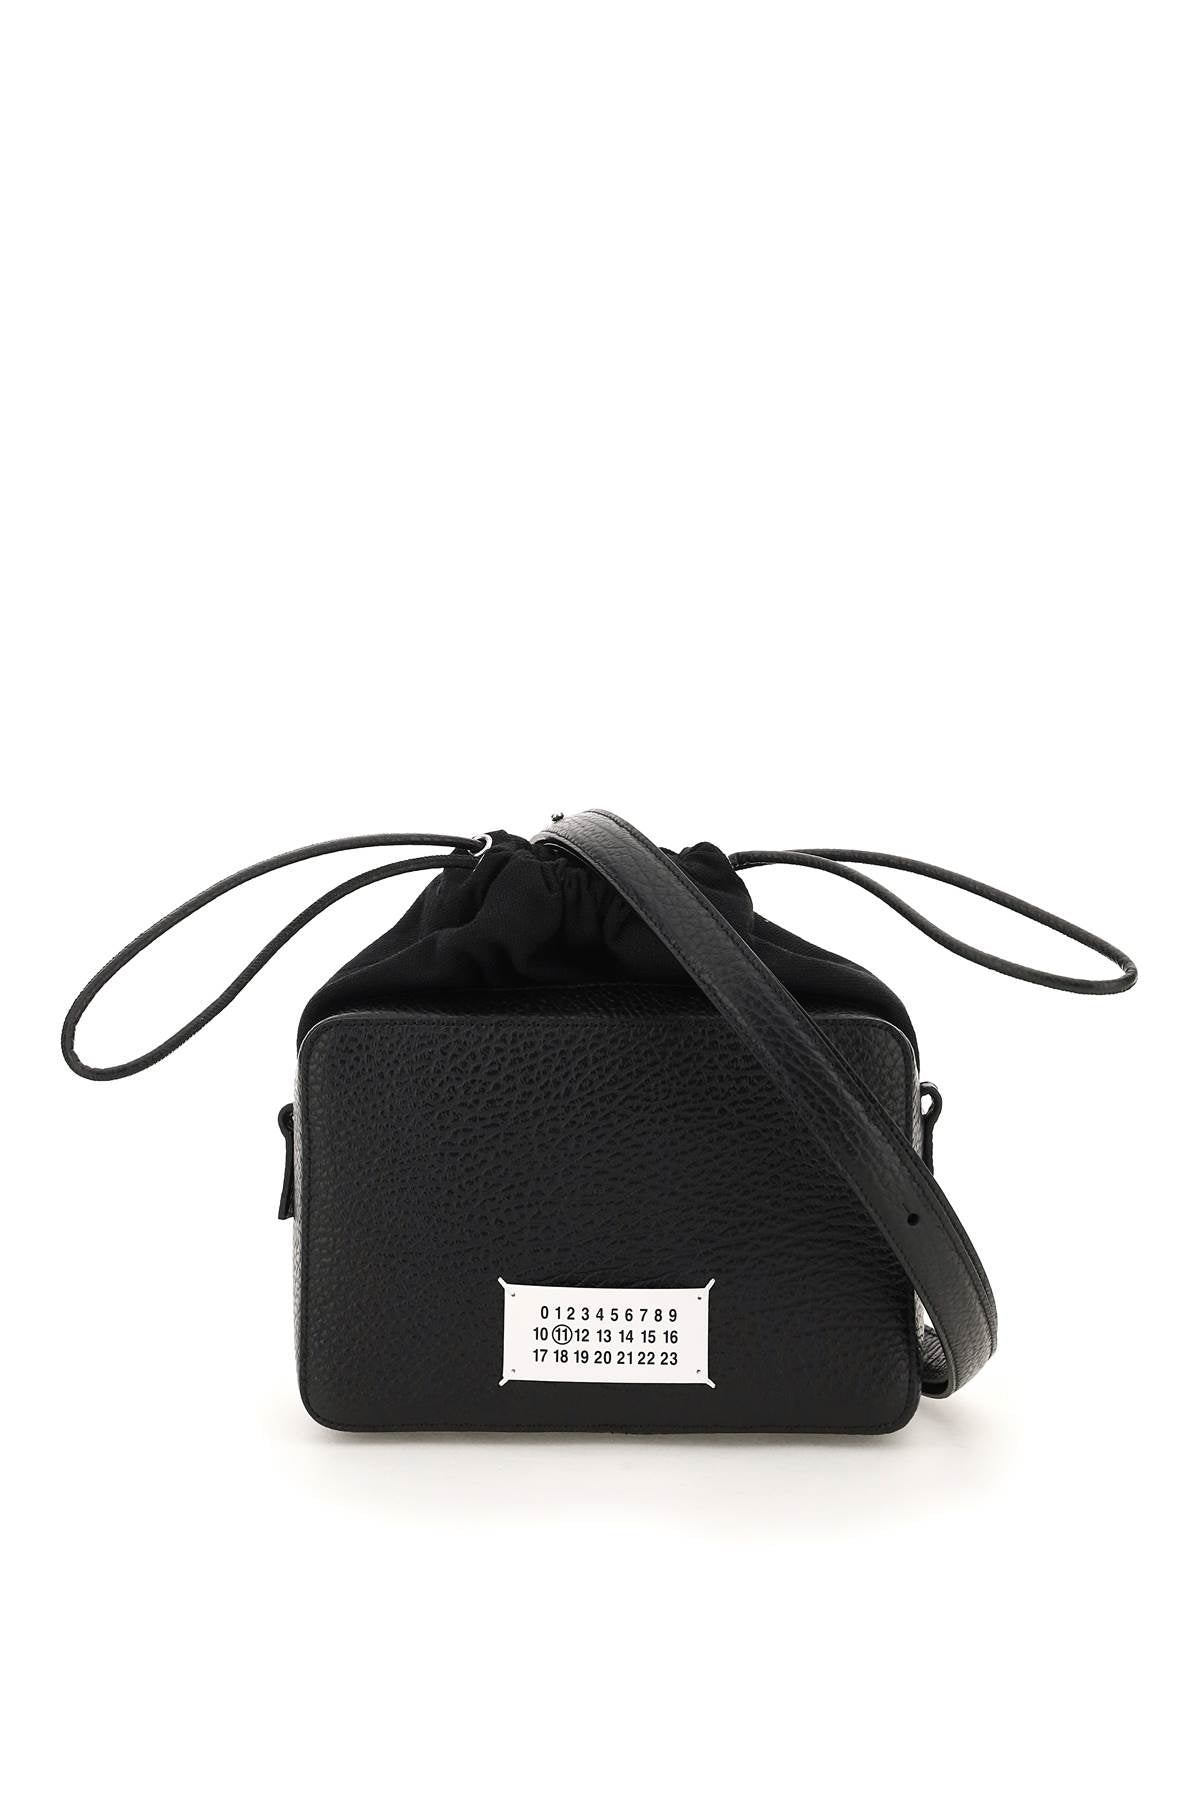 MAISON MARGIELA Black Leather Crossbody Bag for Women